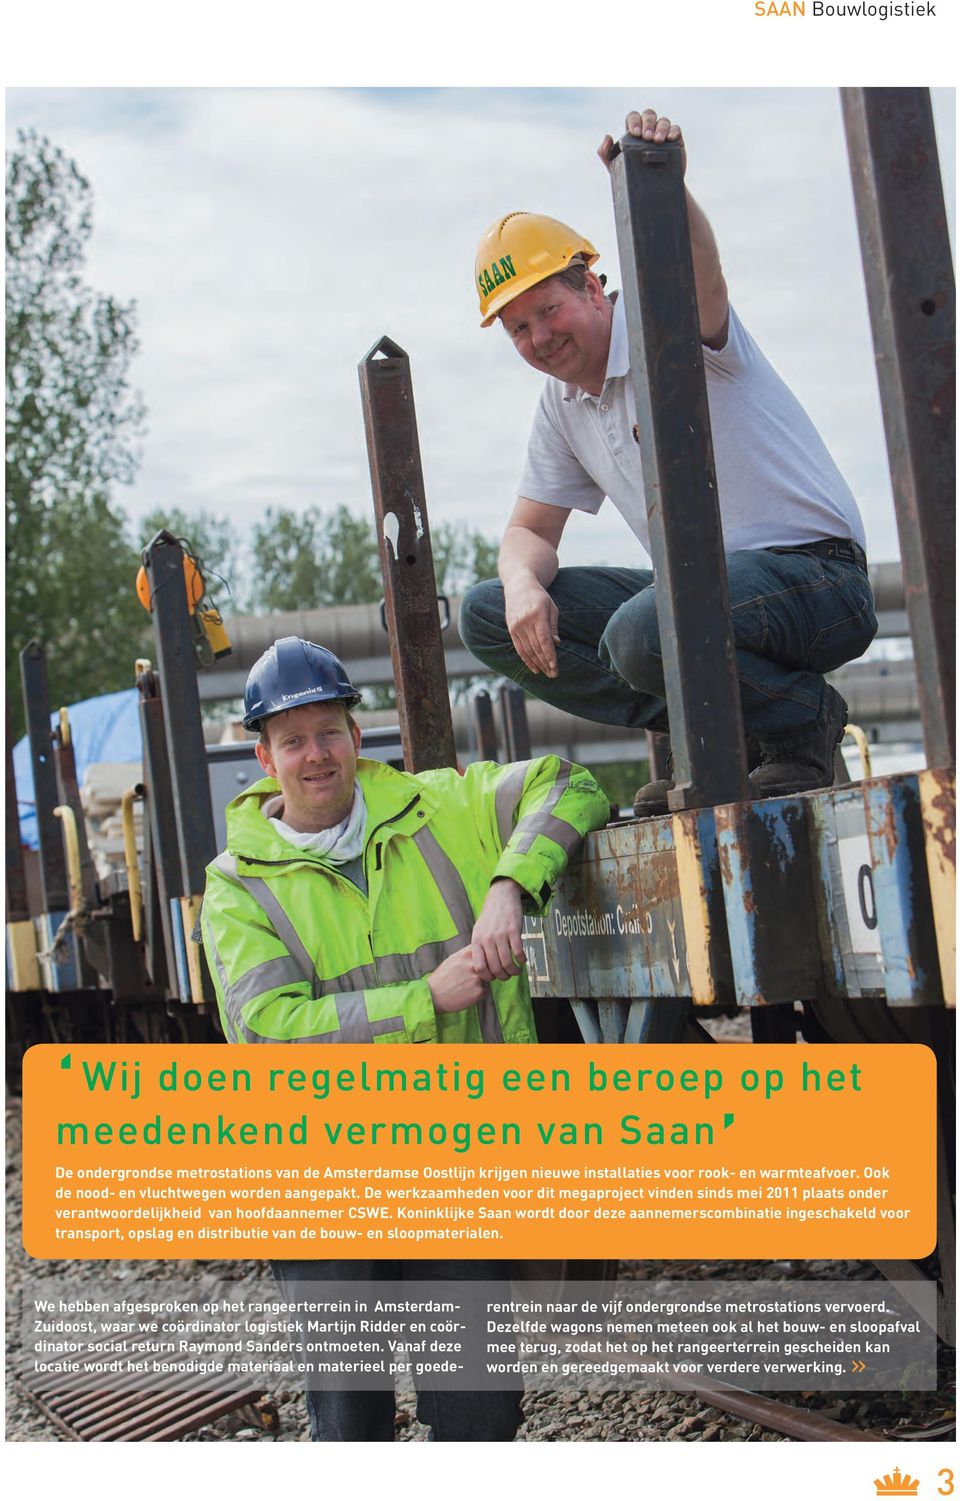 Koninklijke Saan wordt door deze aannemerscombinatie ingeschakeld voor transport, opslag en distributie van de bouw- en sloopmaterialen.